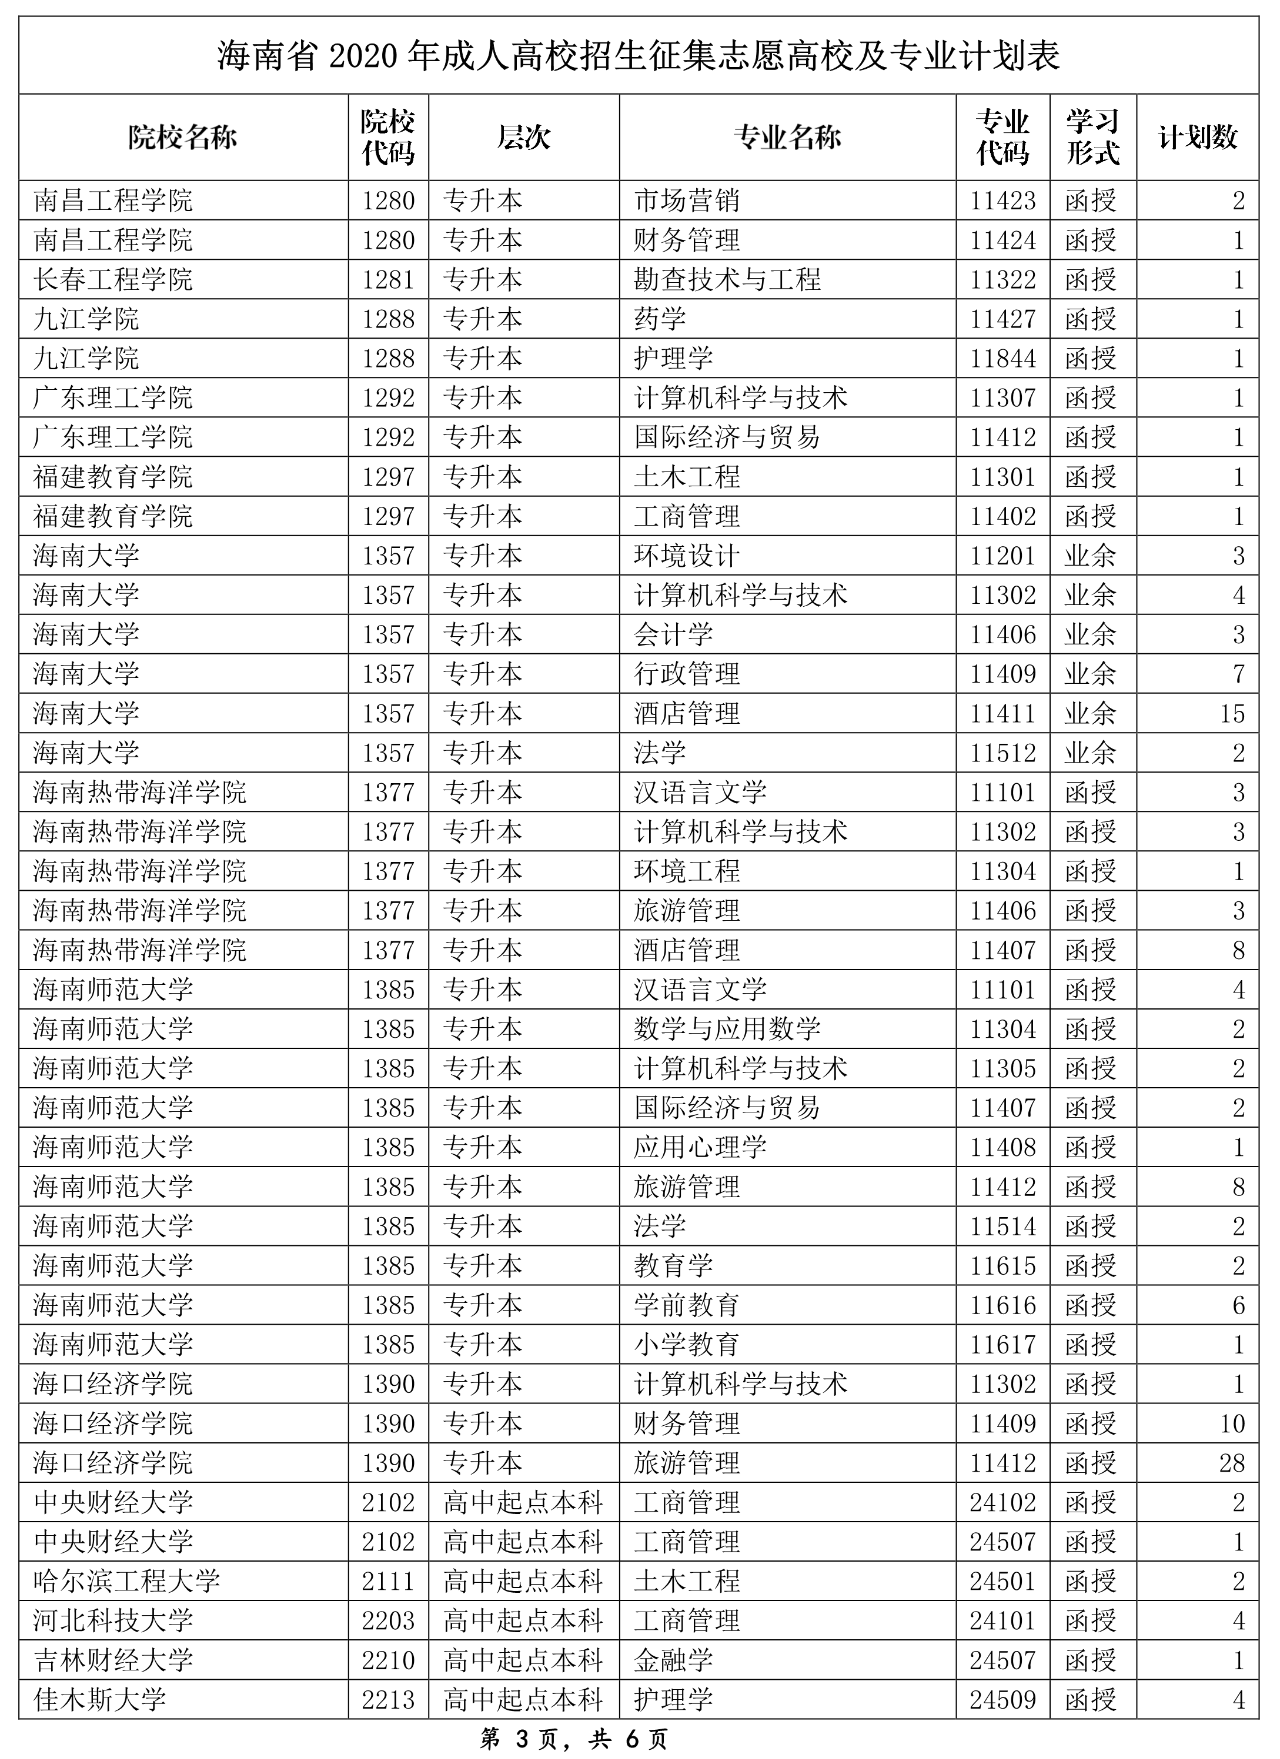 2014年广东高考人数_2022年广东成人高考考生人数_2015年广东高考各分数段人数